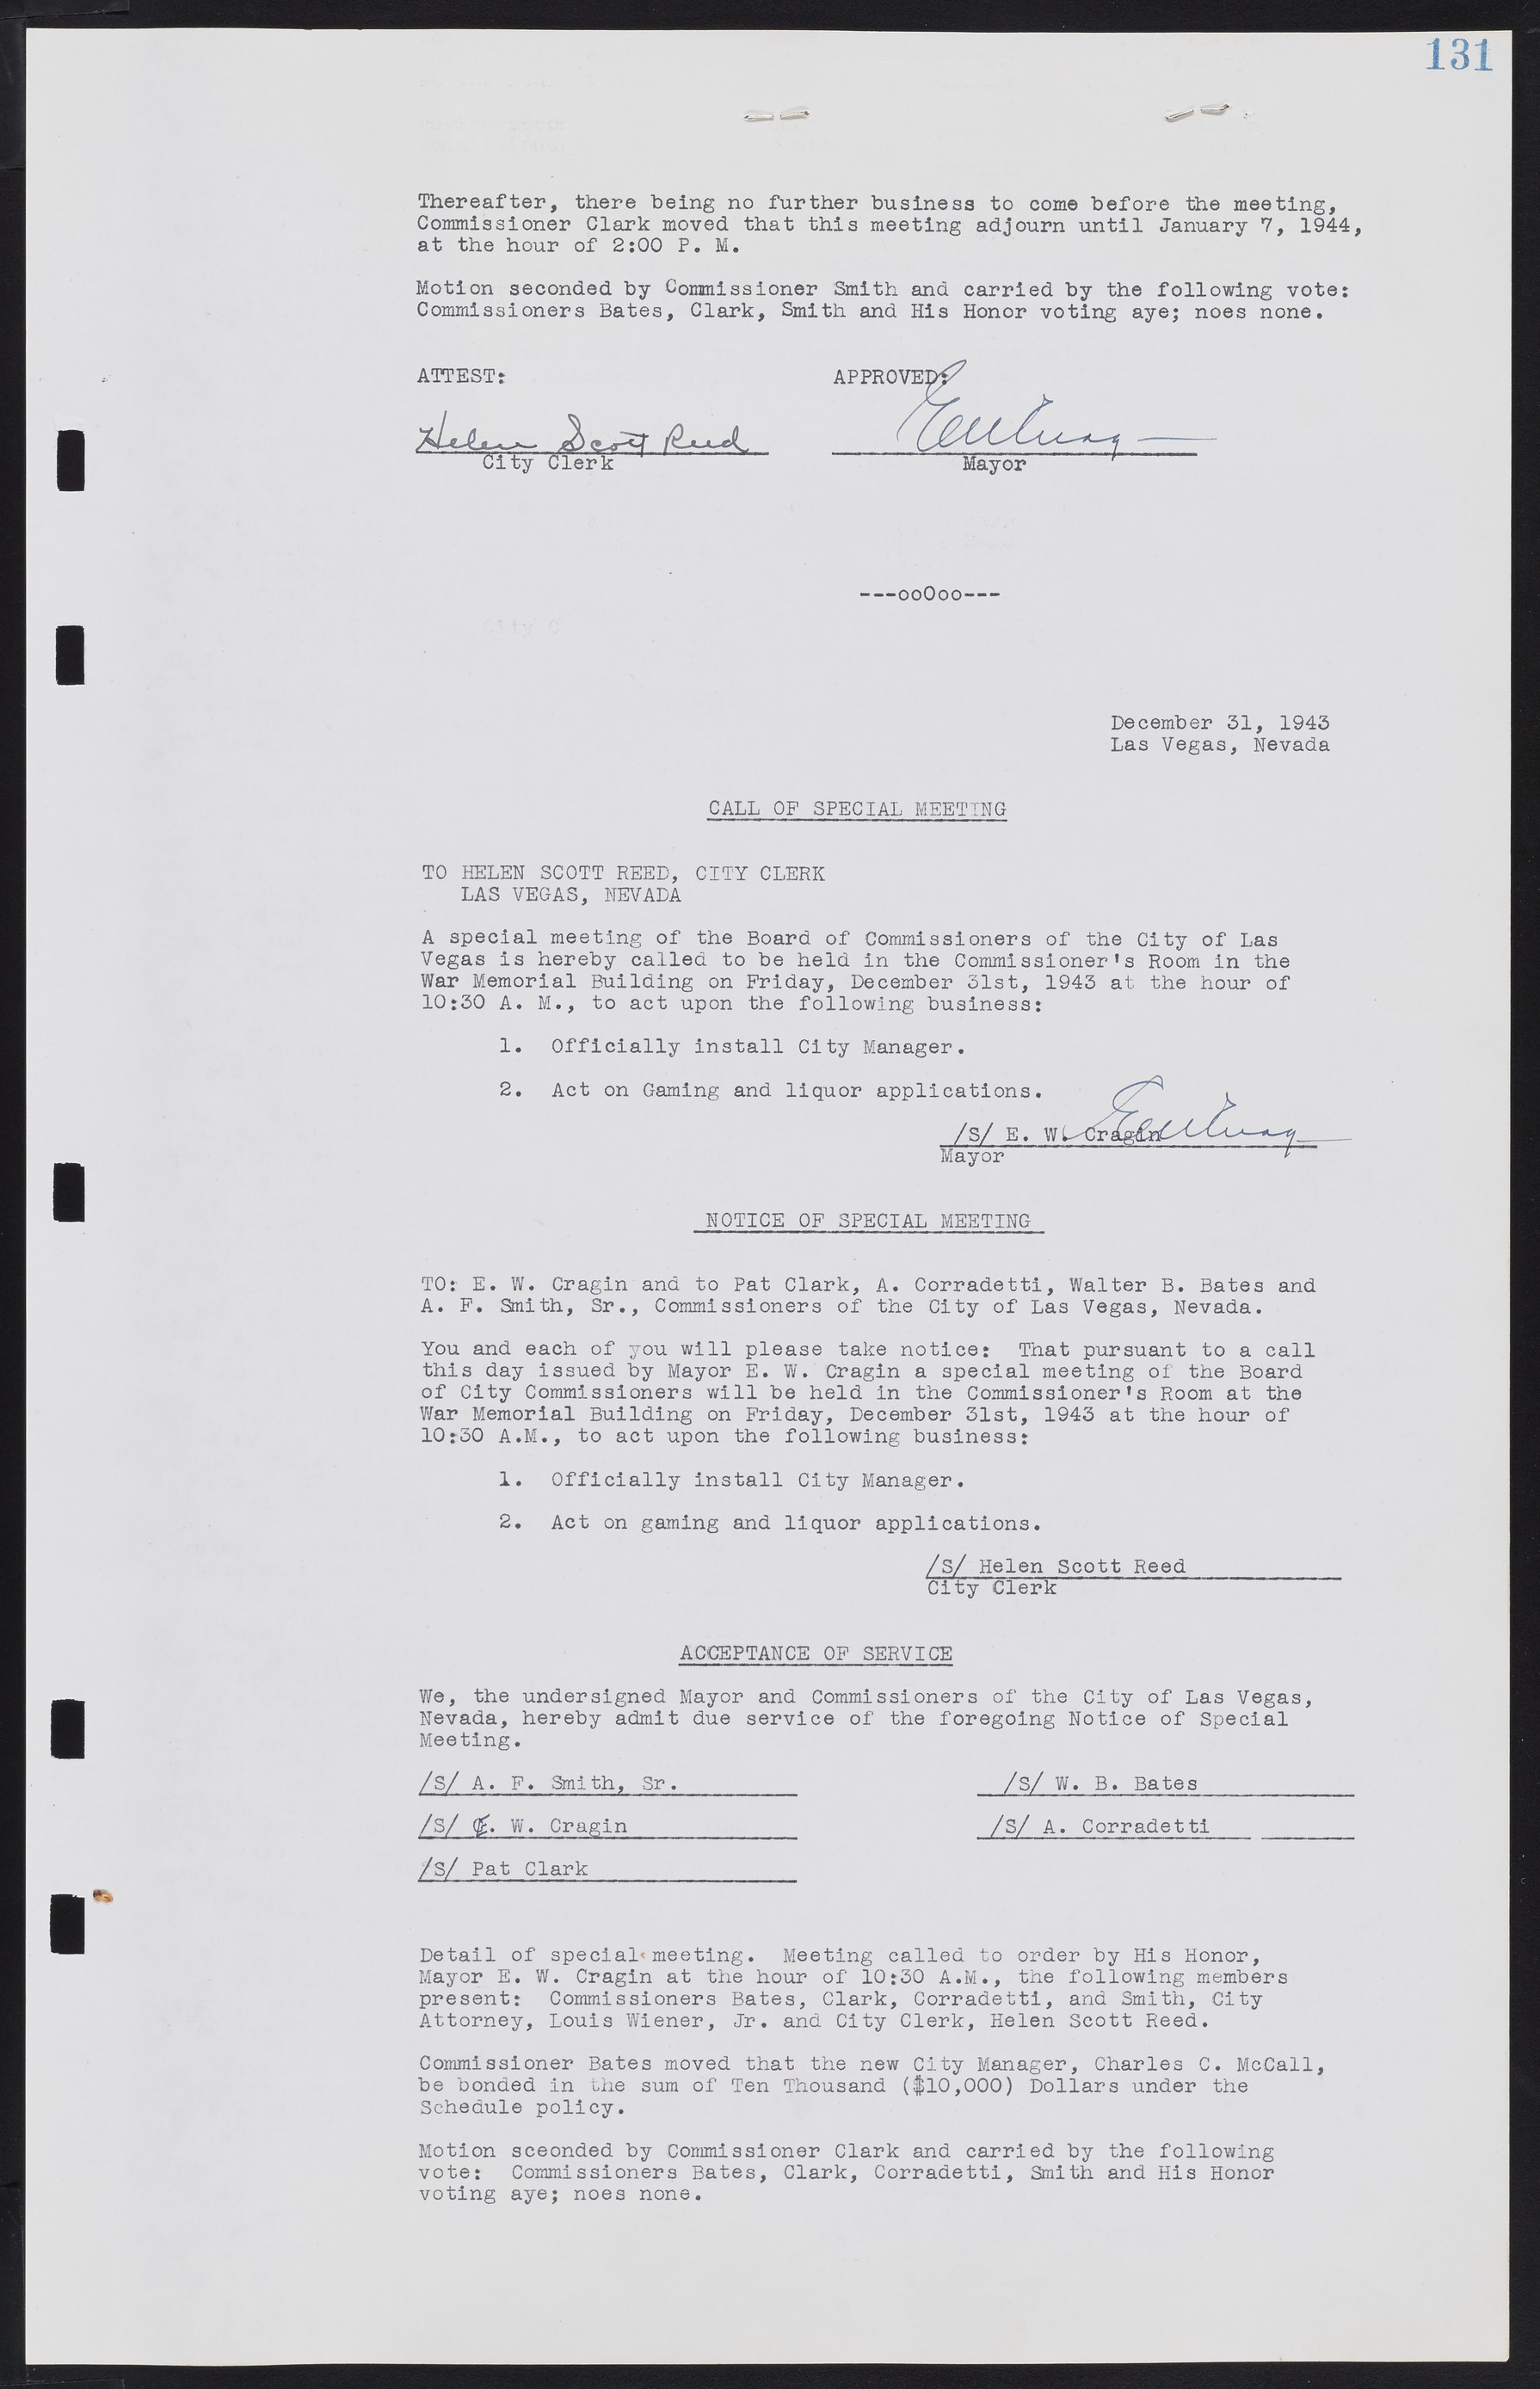 Las Vegas City Commission Minutes, August 11, 1942 to December 30, 1946, lvc000005-145